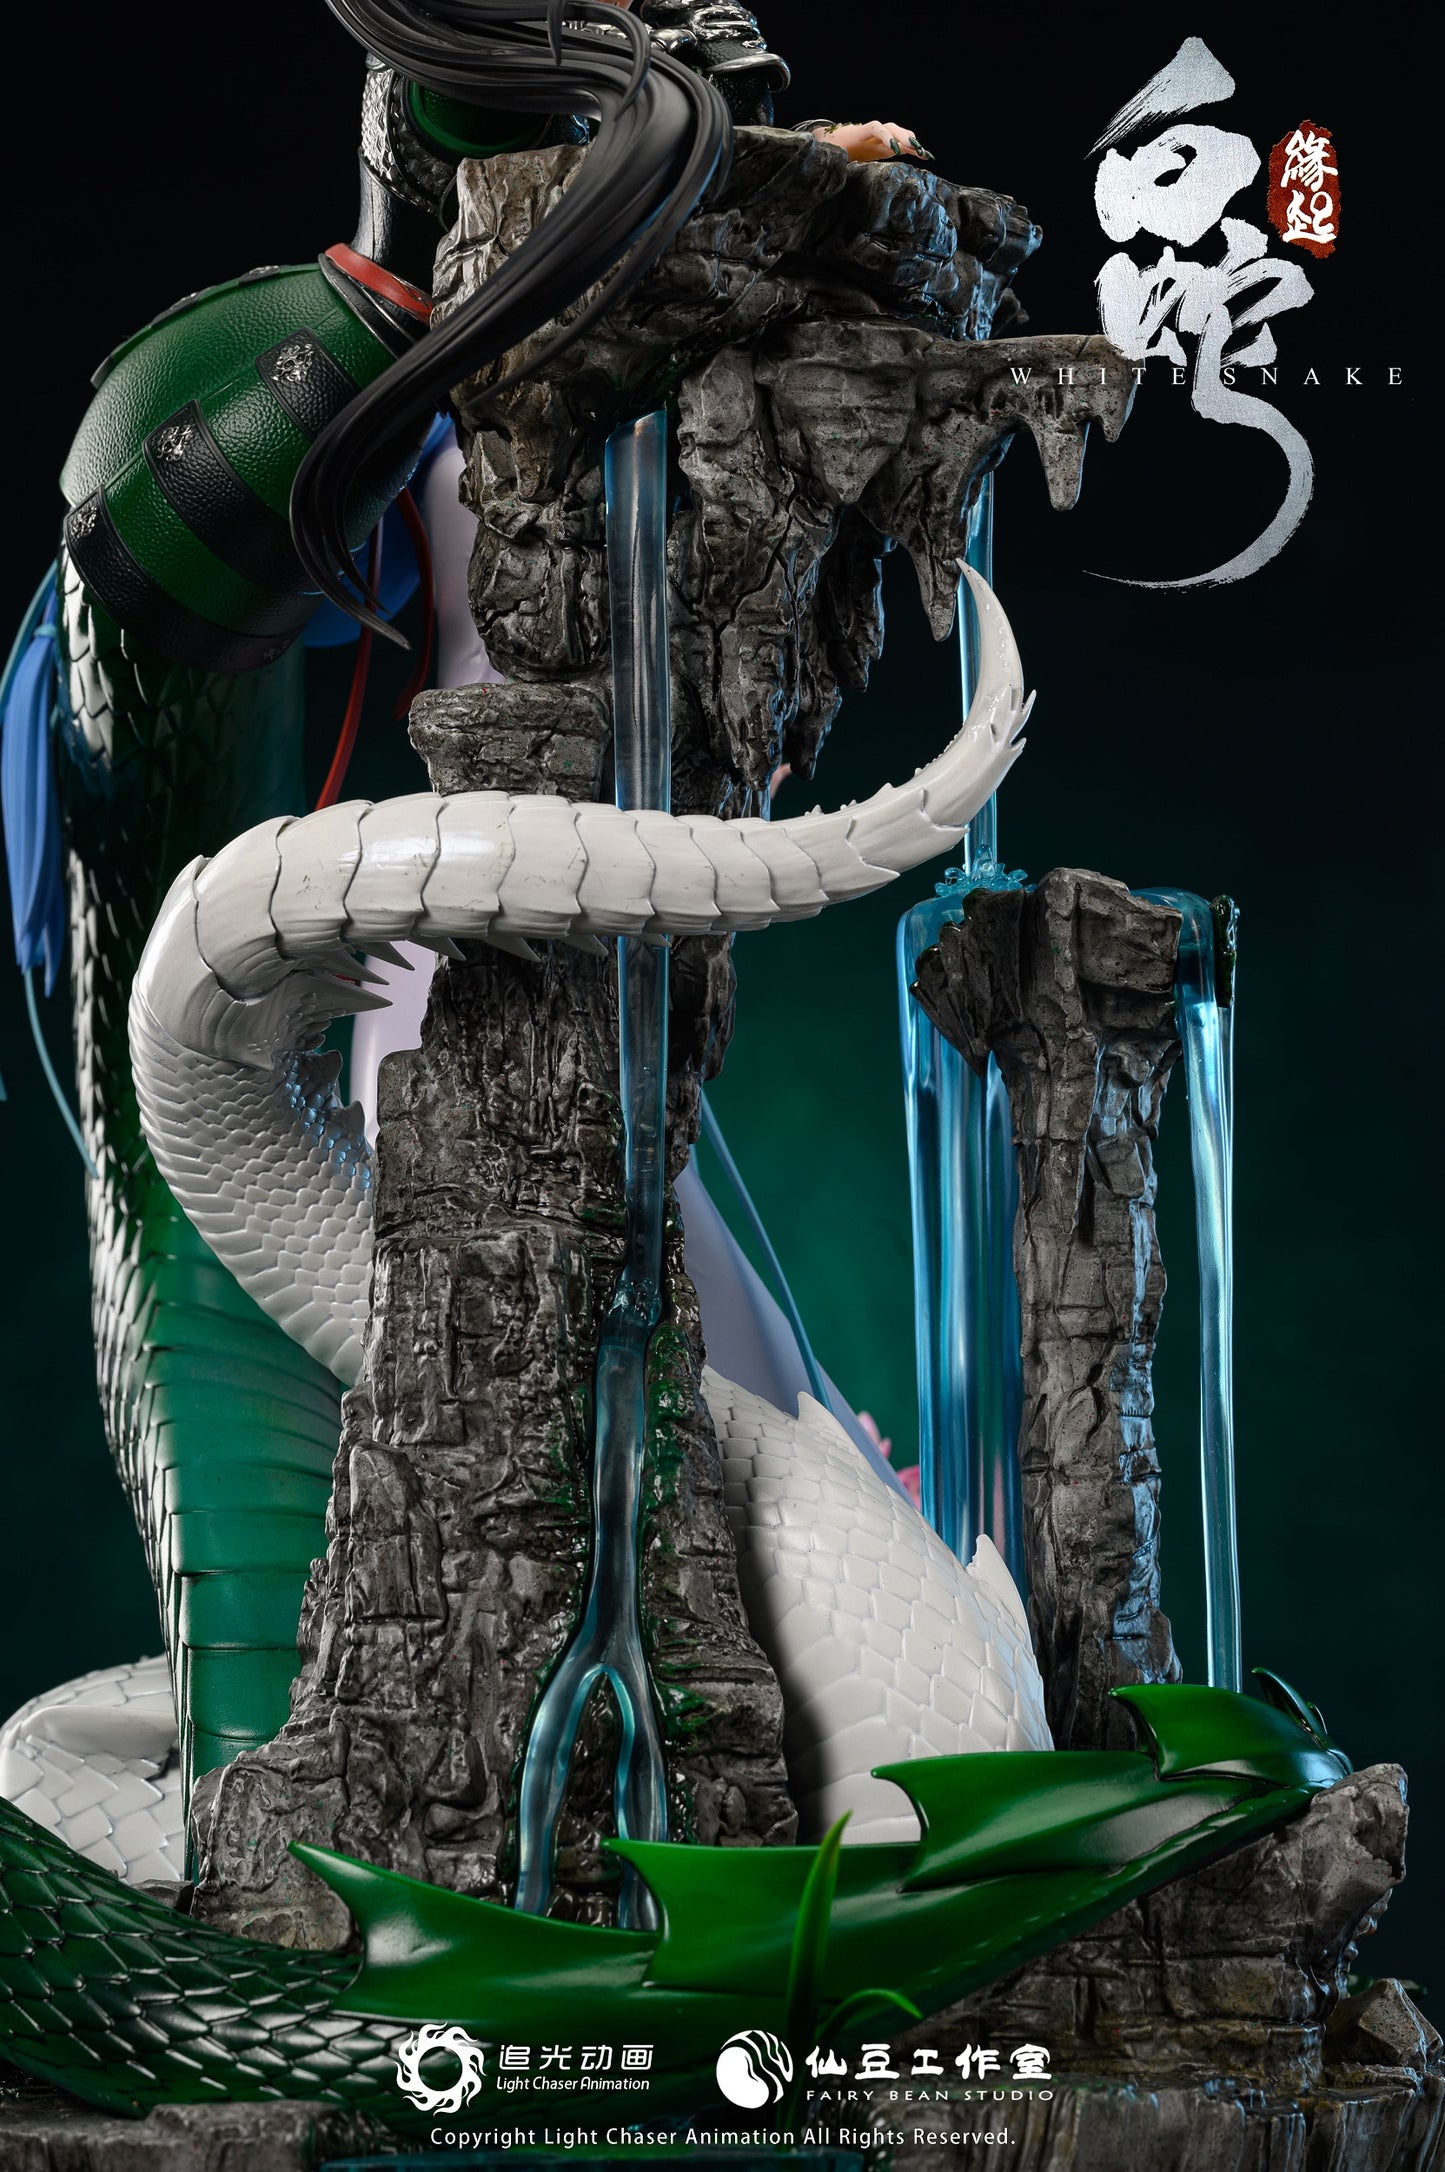 Fairy Bean Studio - White Snake (Licensed) [PRE-ORDER]